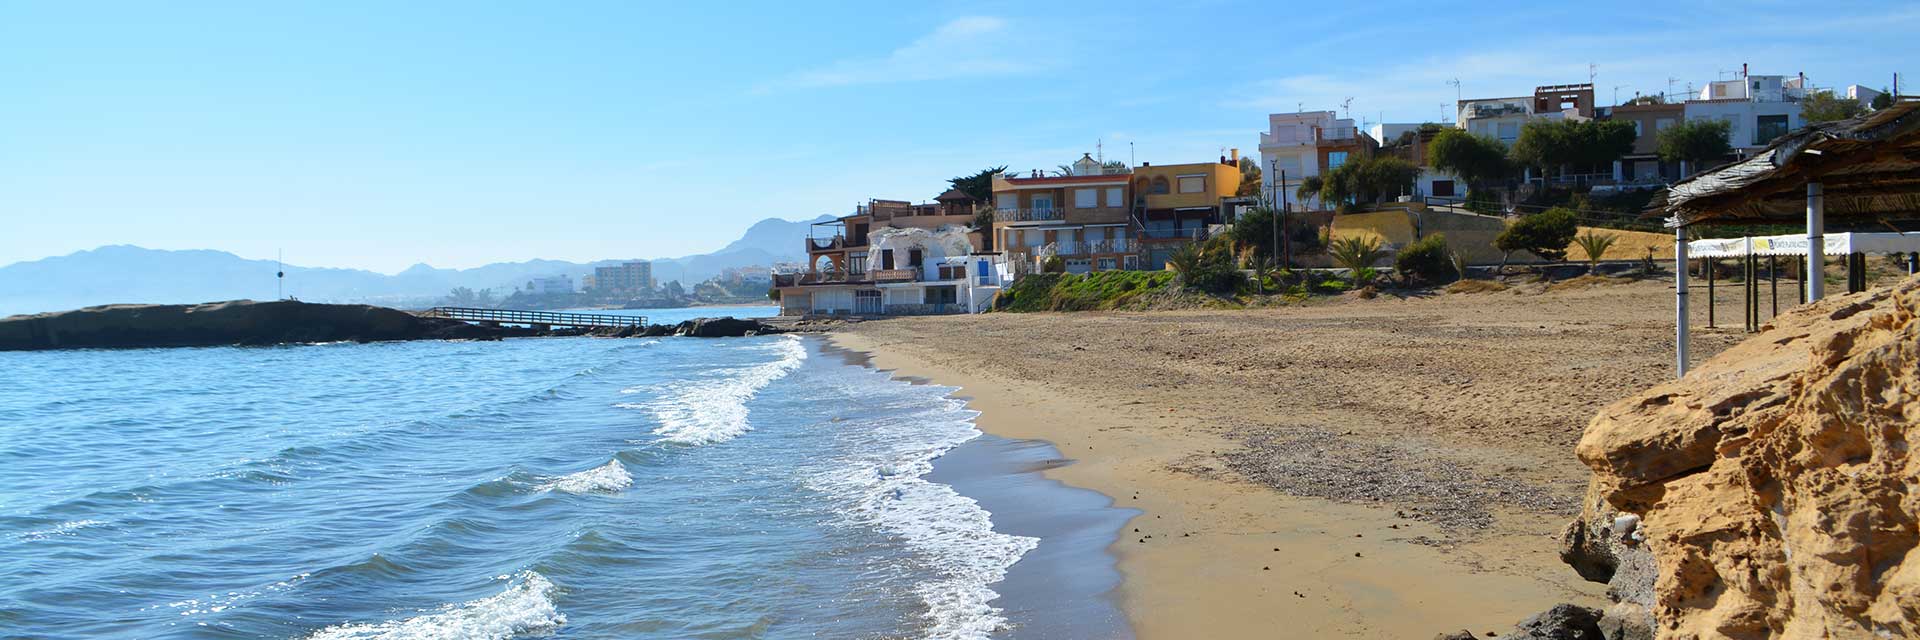 Playas de San Juan de los Terreros ▶ Pulpi ▶ Costa de Almería